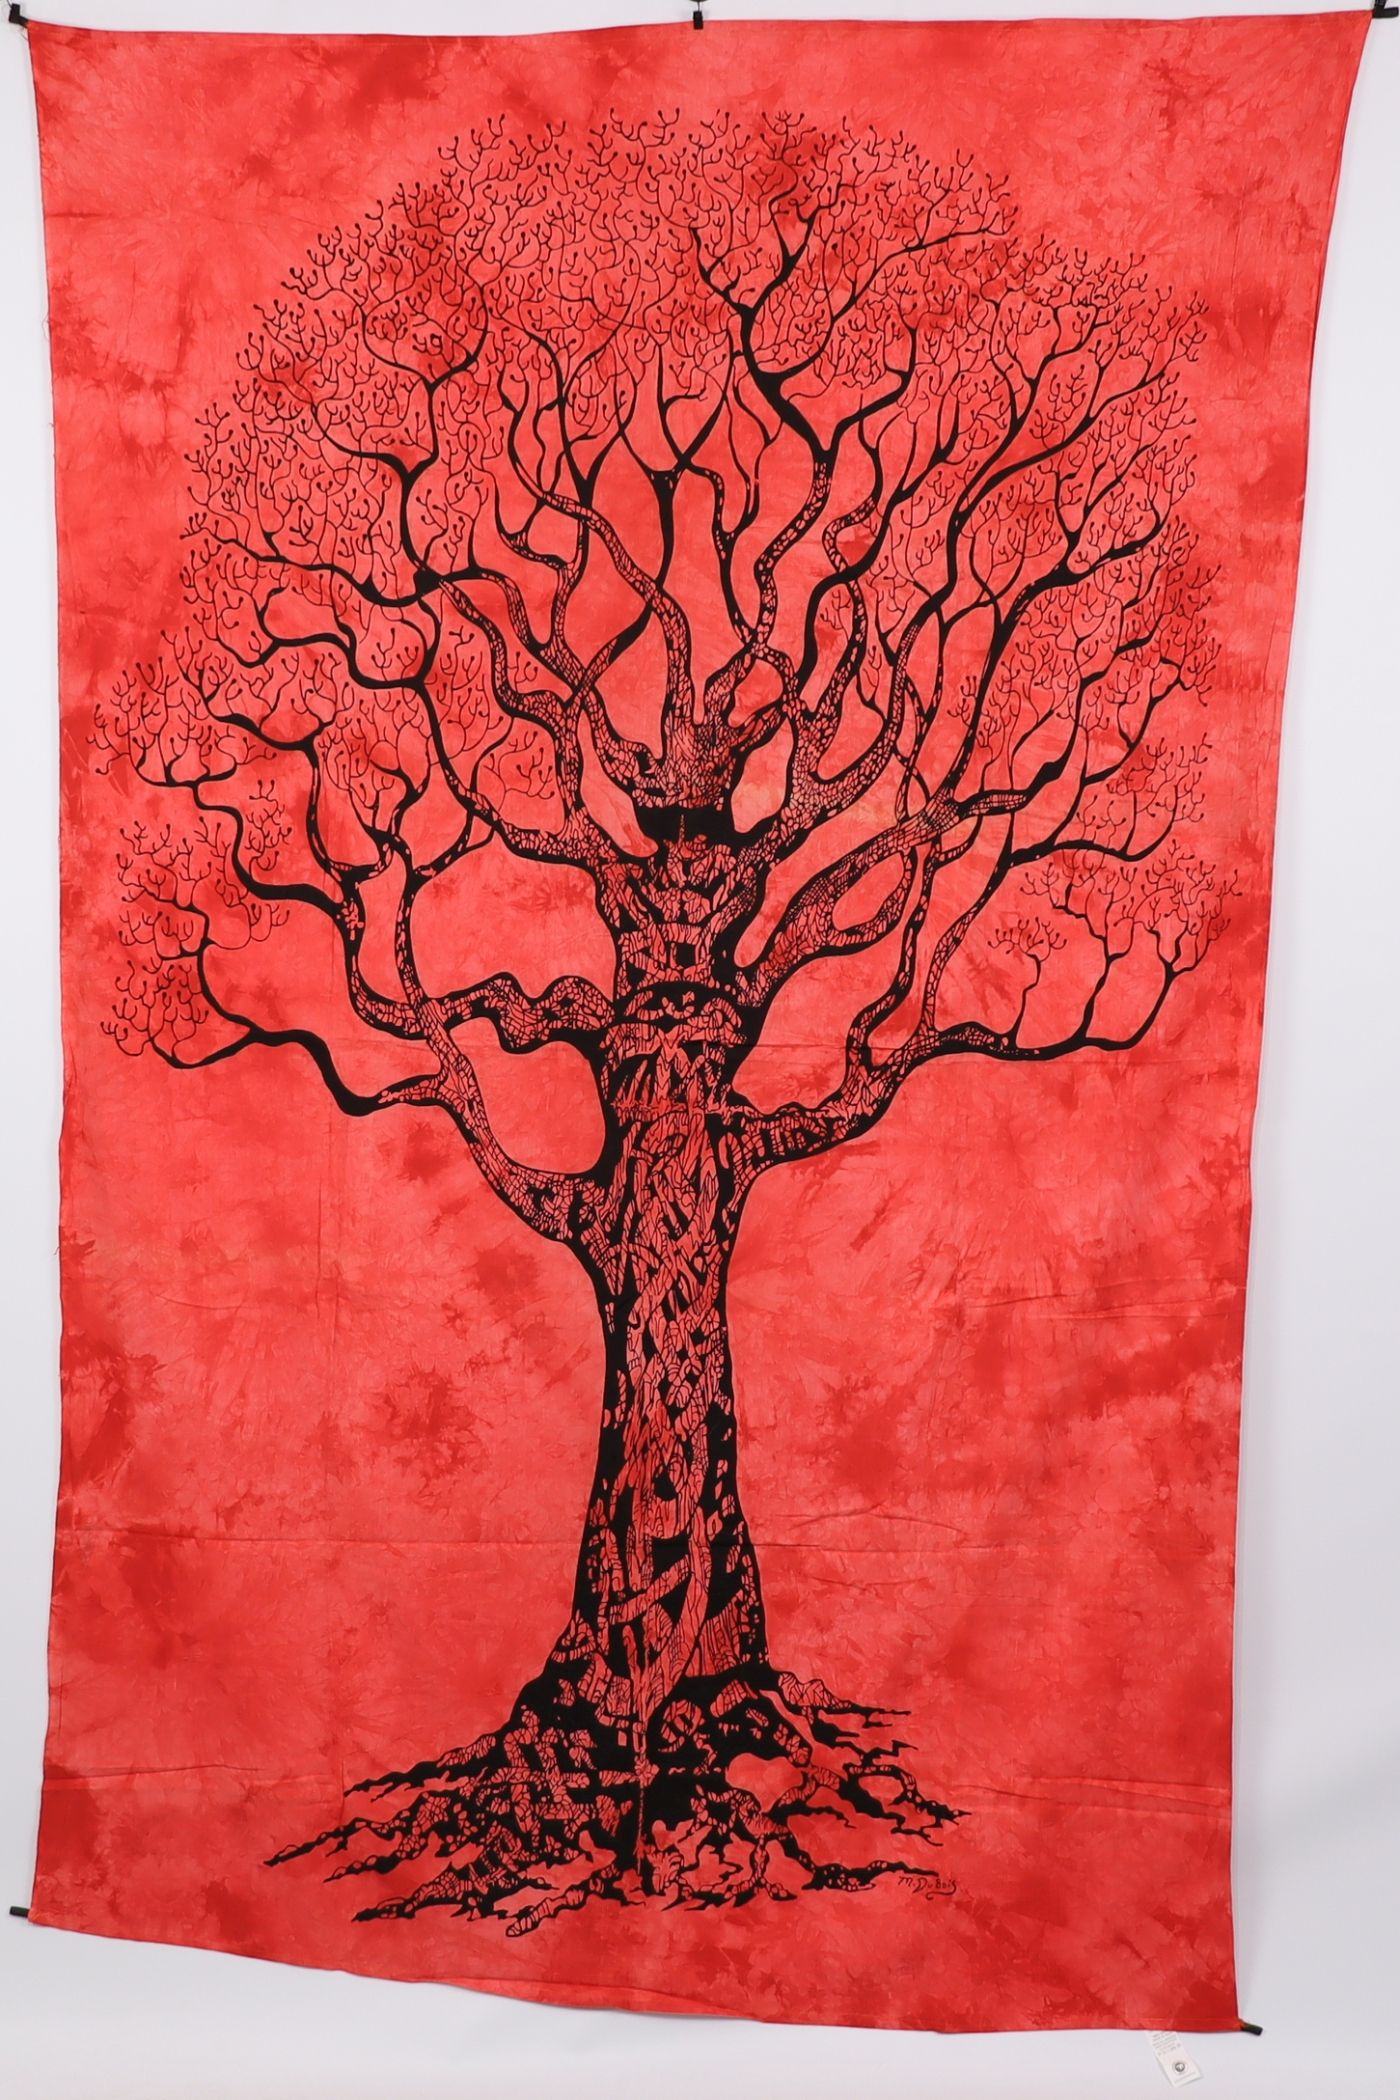 Wandtuch XL 130x210 - Baum des Lebens - 100% Baumwolle - detailreicher indischer Druck - Batik - dekoratives Tuch, Wandbild, Tagesdecke, Bedcover, Vorhang, Picknick-Decke, Strandtuch